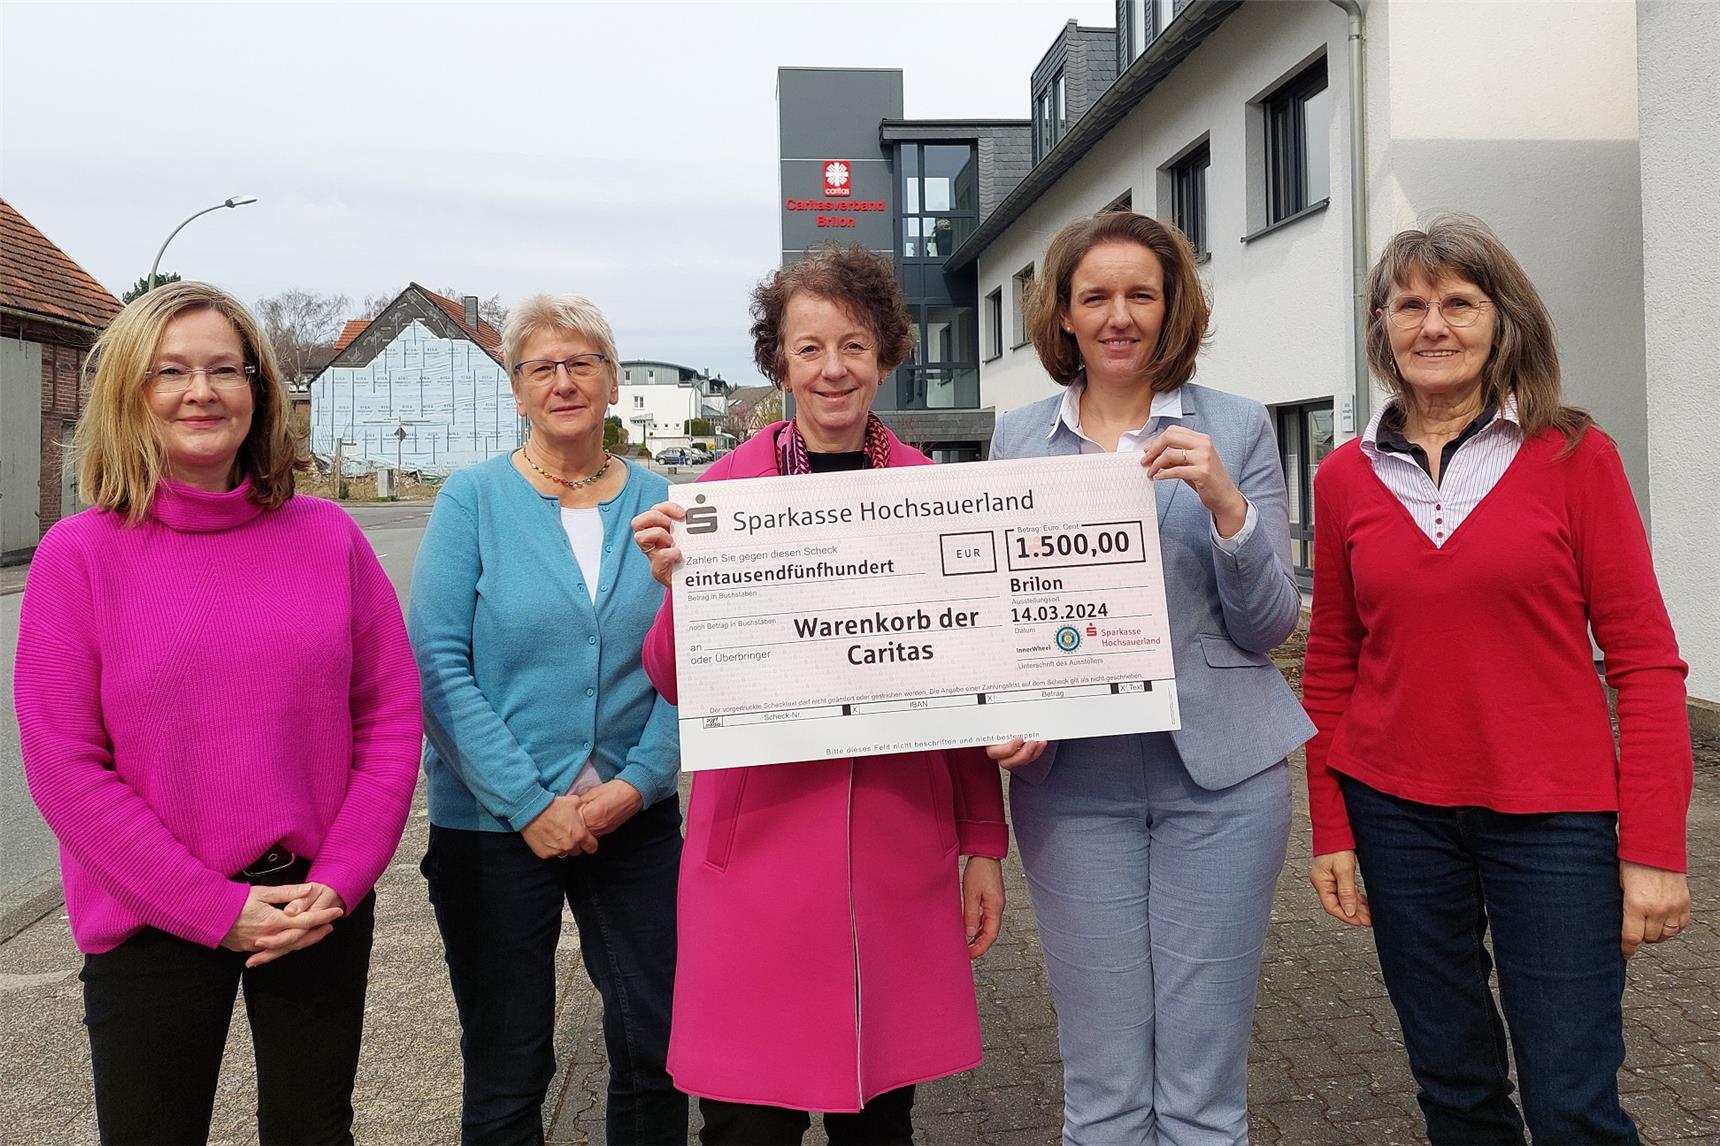 Inner Wheel Club und Sparkasse Hochsauerland spenden 1.500 Euro an den Warenkorb